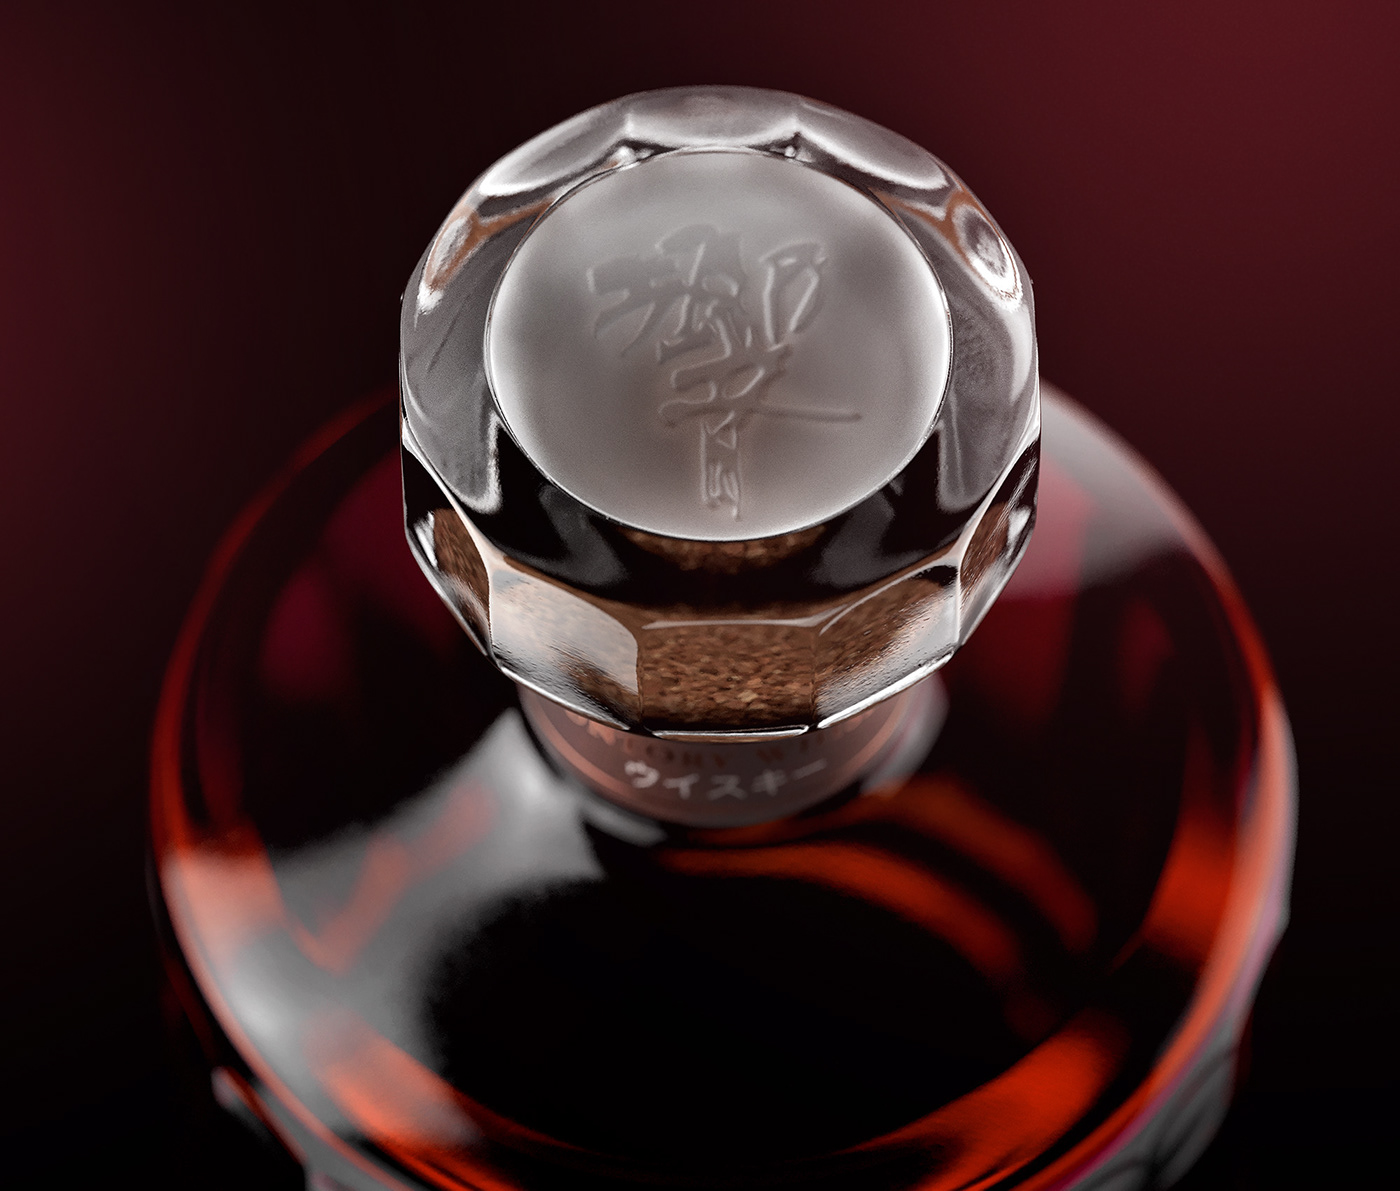 alcohol bottle CGI hibiki japanese japanese whisky Packaging Product Photography retouching  Whisky